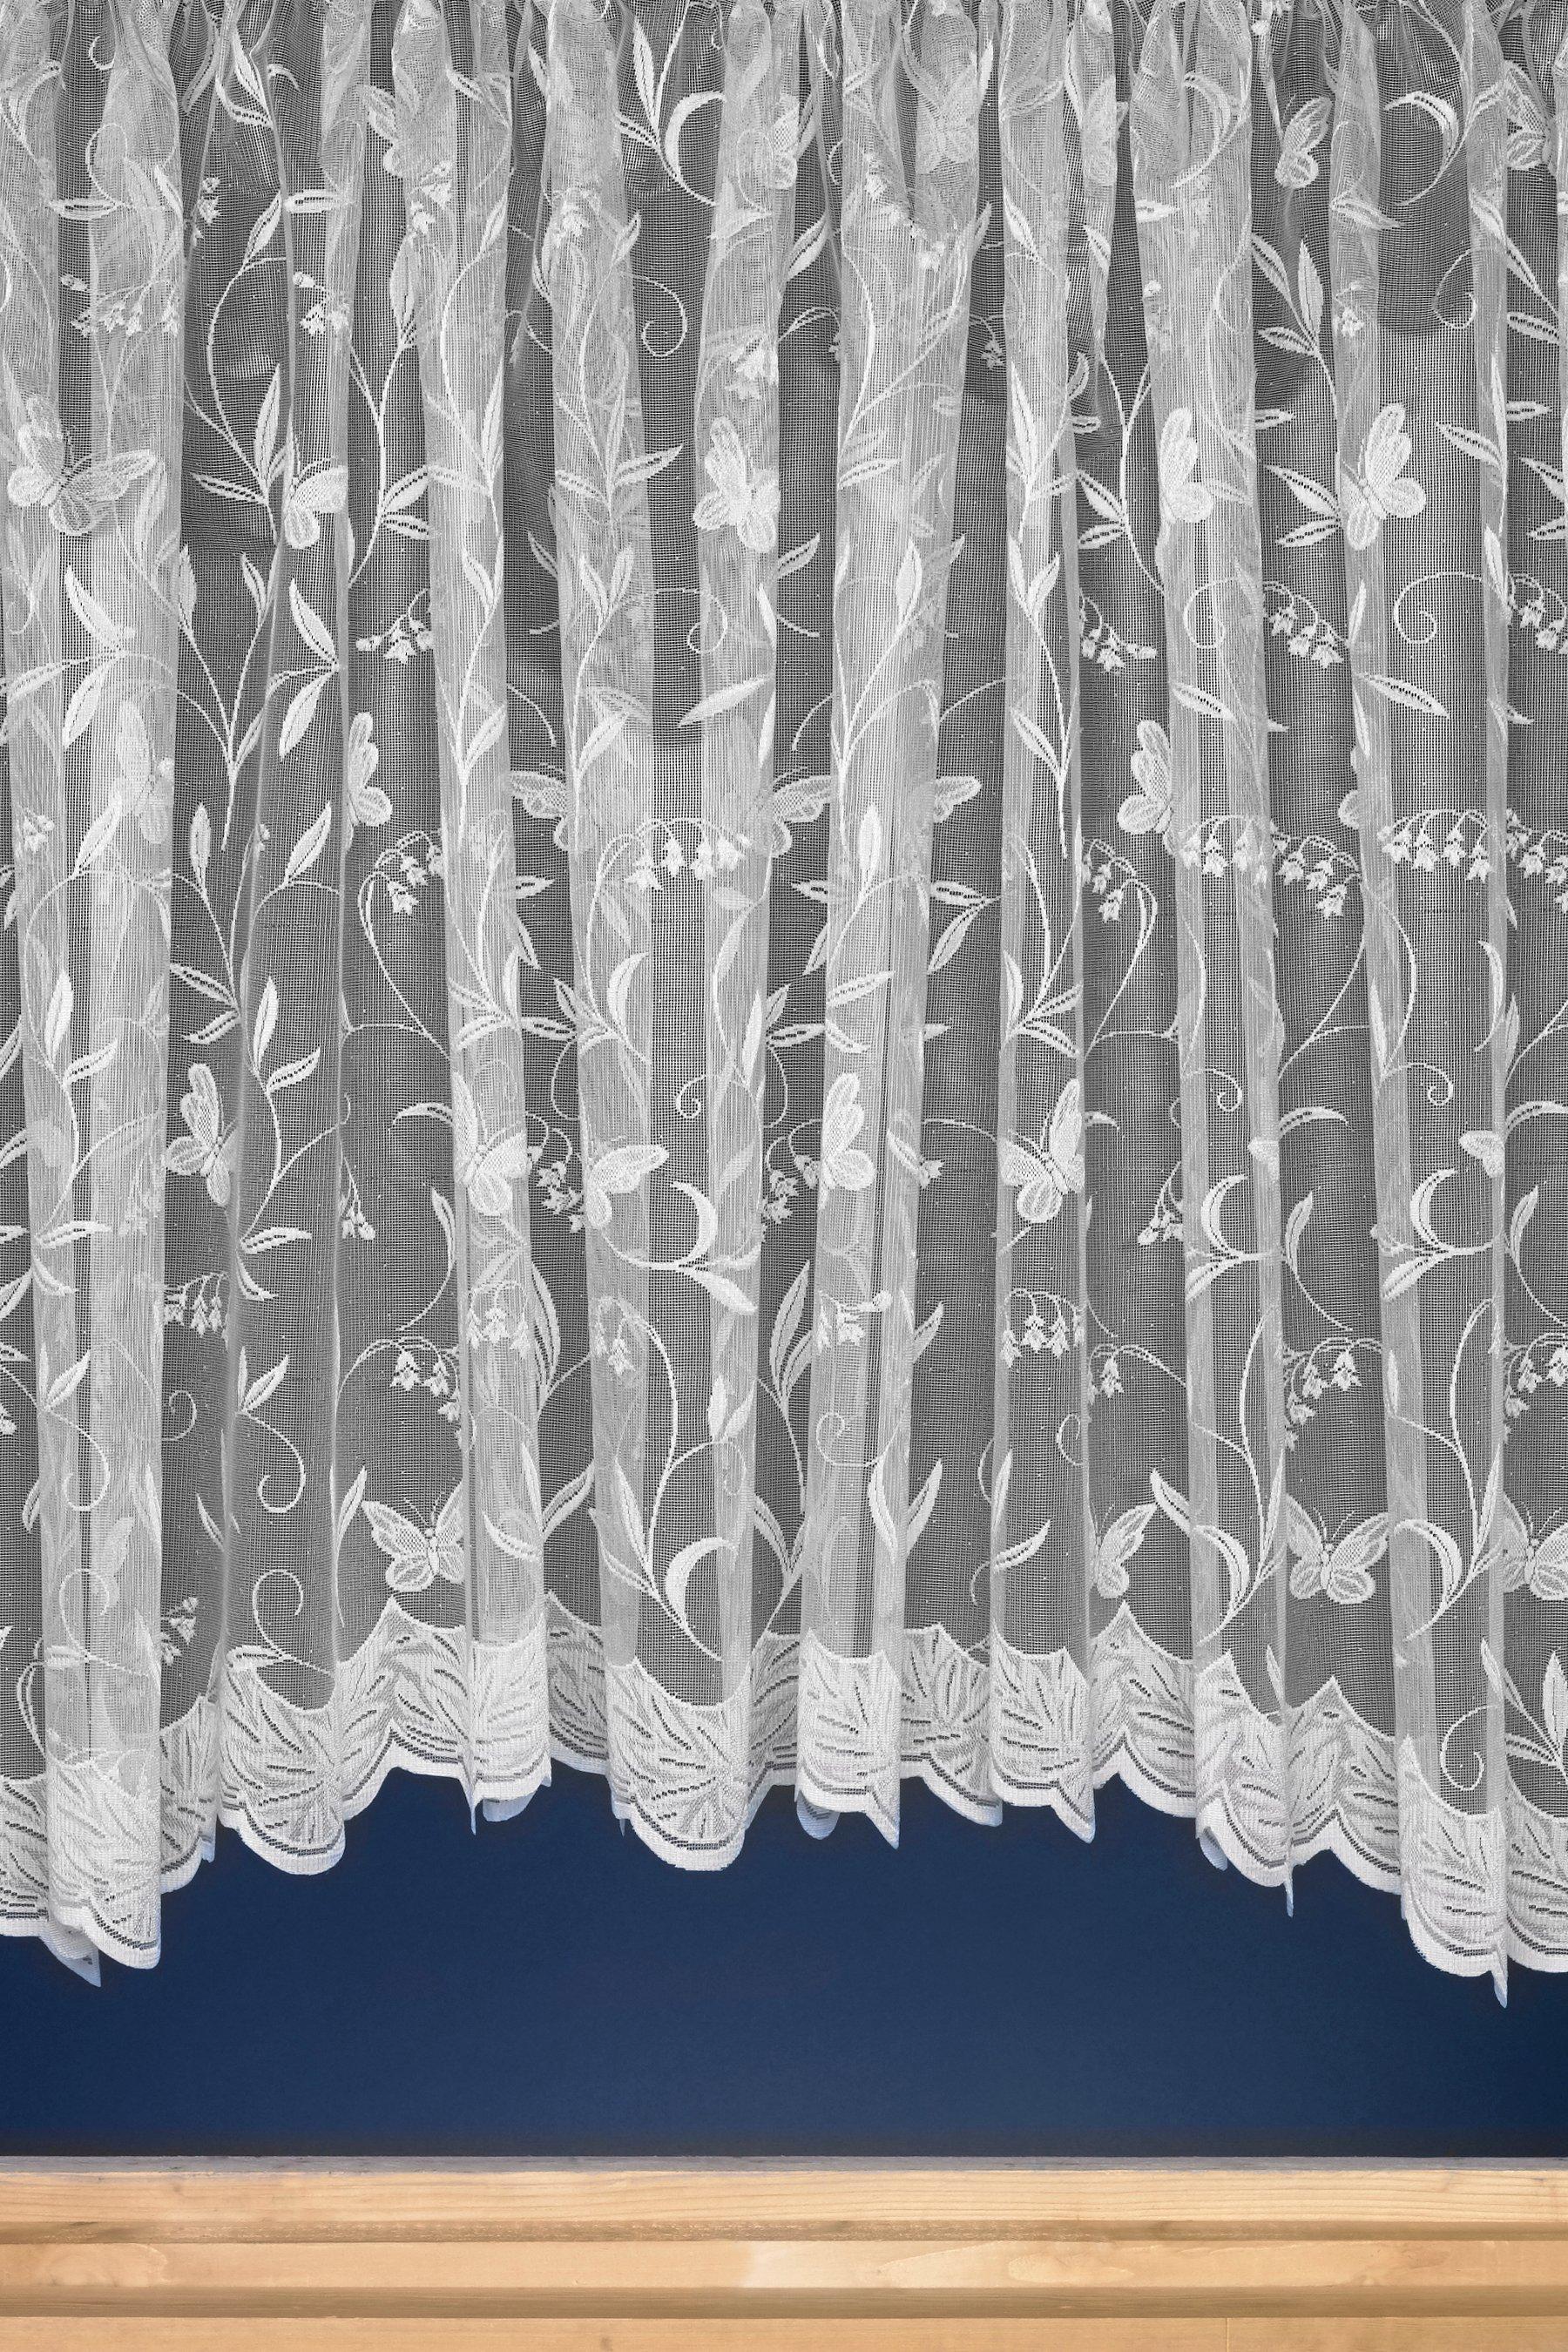 Hawaii Butterfly White Jardiniere Window Net Curtain Drapes 